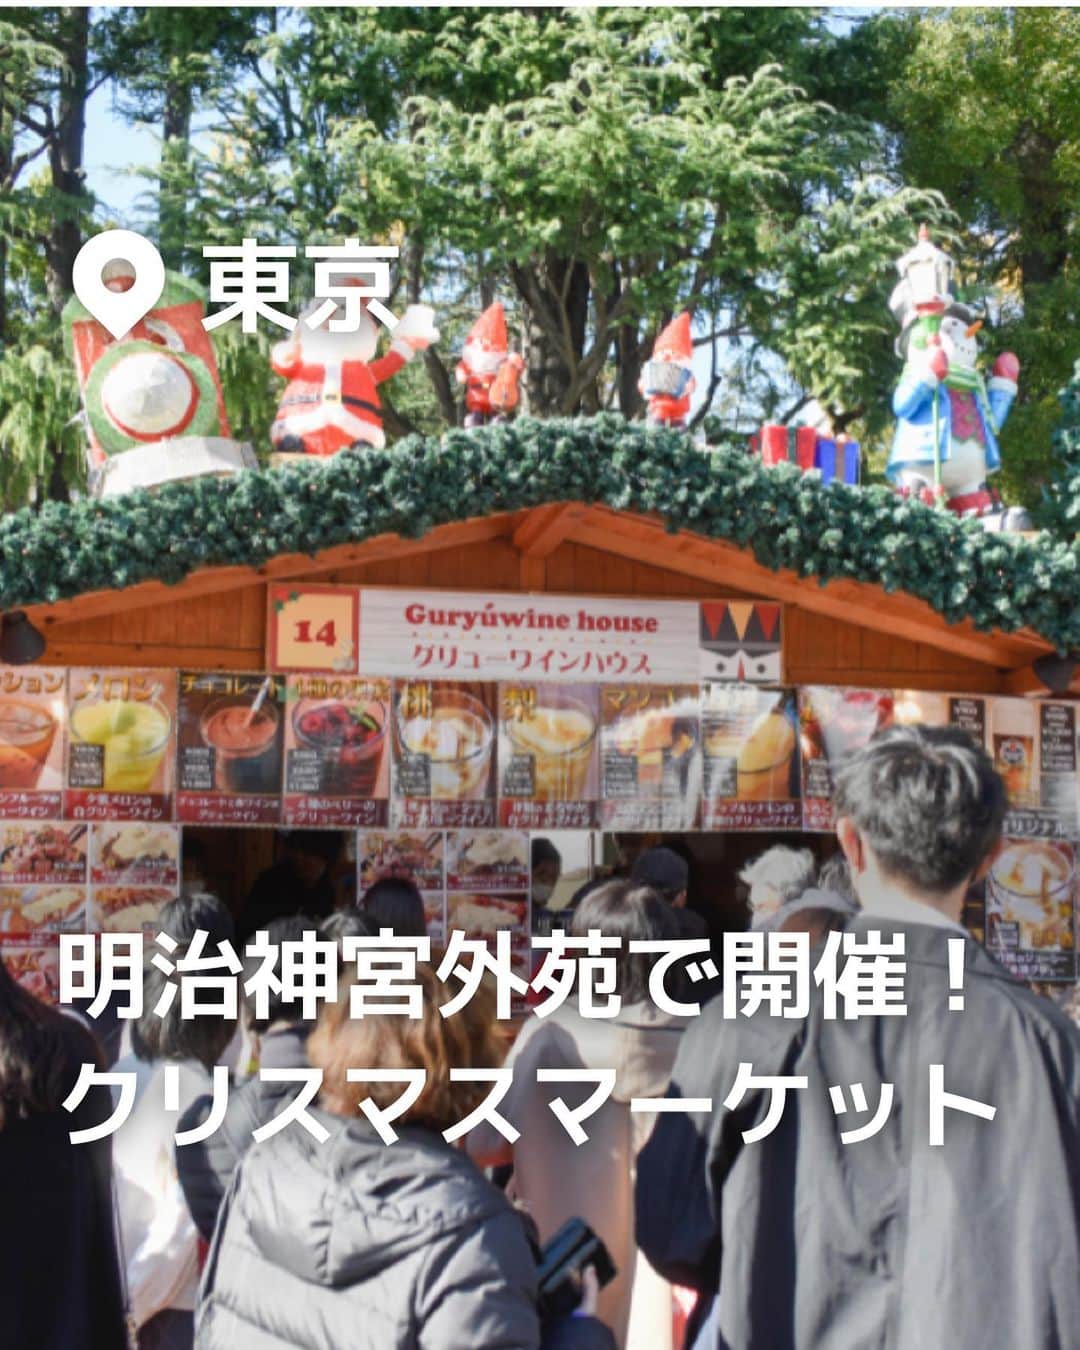 iko-yo（いこーよオフィシャル）のインスタグラム：「\保存推奨！/ 今回ピックアップしたのは「東京クリスマスマーケット2023 in 明治神宮外苑」  ーーーーーーーーーーーーーーーーーー 【 # 東京クリスマスマーケット2023】  @tokyochristmas 🌈 おすすめポイント🌈 クリスマスにピッタリな欧風料理、スイーツの飲食店、かわいらしいクリスマス雑貨などを販売するお店の他に、音楽団などによる演奏や、ステージステージパフォーマンスの披露もあります！  📍住所 東京都新宿区霞ケ丘町 2-3聖徳記念絵画館前・総合球技場  ⏰開催日時 2023年11月23日(木)〜12月25日(月) 初日 16：00～21：30 （L.O.21:00） その他全日 11：00～21：30 （L.O.21:00） ※雨天時も開催 （荒天の場合、中止する場合があります。また、コロナウイルスの感染状況により開催時間変更になる場合があります。）  🚗アクセス ・電車の場合 ●東京メトロ銀座線、半蔵門線「外苑前駅」より徒歩10分 ●東京メトロ半蔵門線、大江戸線「青山一丁目駅」より徒歩10分 ●JR中央・総武線「信濃町駅」より徒歩5分 ●都営大江戸線「国立競技場駅」より徒歩5分  ※2023年11月28日時点の情報です。最新の情報は公式HPをご確認下さい。　 ーーーーーーーーーーーーーーーーーーー おでかけ情報量は日本最大級！ 子どもとお出かけ情報サイト「いこーよ」 「親子でおでかけしたい場所」をご紹介させていただいています！ お子さんとのおでかけの思い出の写真を、このアカウントをフォローの上#いこーよ #いこーよおでかけ部 をつけてぜひ投稿してください。魅力的な写真は、いこーよ公式SNSで紹介させていただきます！ 募集中タグ#いこーよ #いこーよおでかけ部 「子どもと行きたい！」と思ったら保存が便利！ プロフィールのURLから「いこーよ」のサイトに行くと、他の投稿やオトクな情報などが載っています♪ ☞ @ikoyo_odekake #いこーよ #お出かけ #おでかけ #お出かけスポット #子連れ #子連れ旅行#こどものいる暮らし #子連れスポット  #子どもとおでかけ  #東京旅行 #東京ママ #東京観光 #明治神宮外苑#東京クリスマス#クリスマス #クリスマスマーケット」